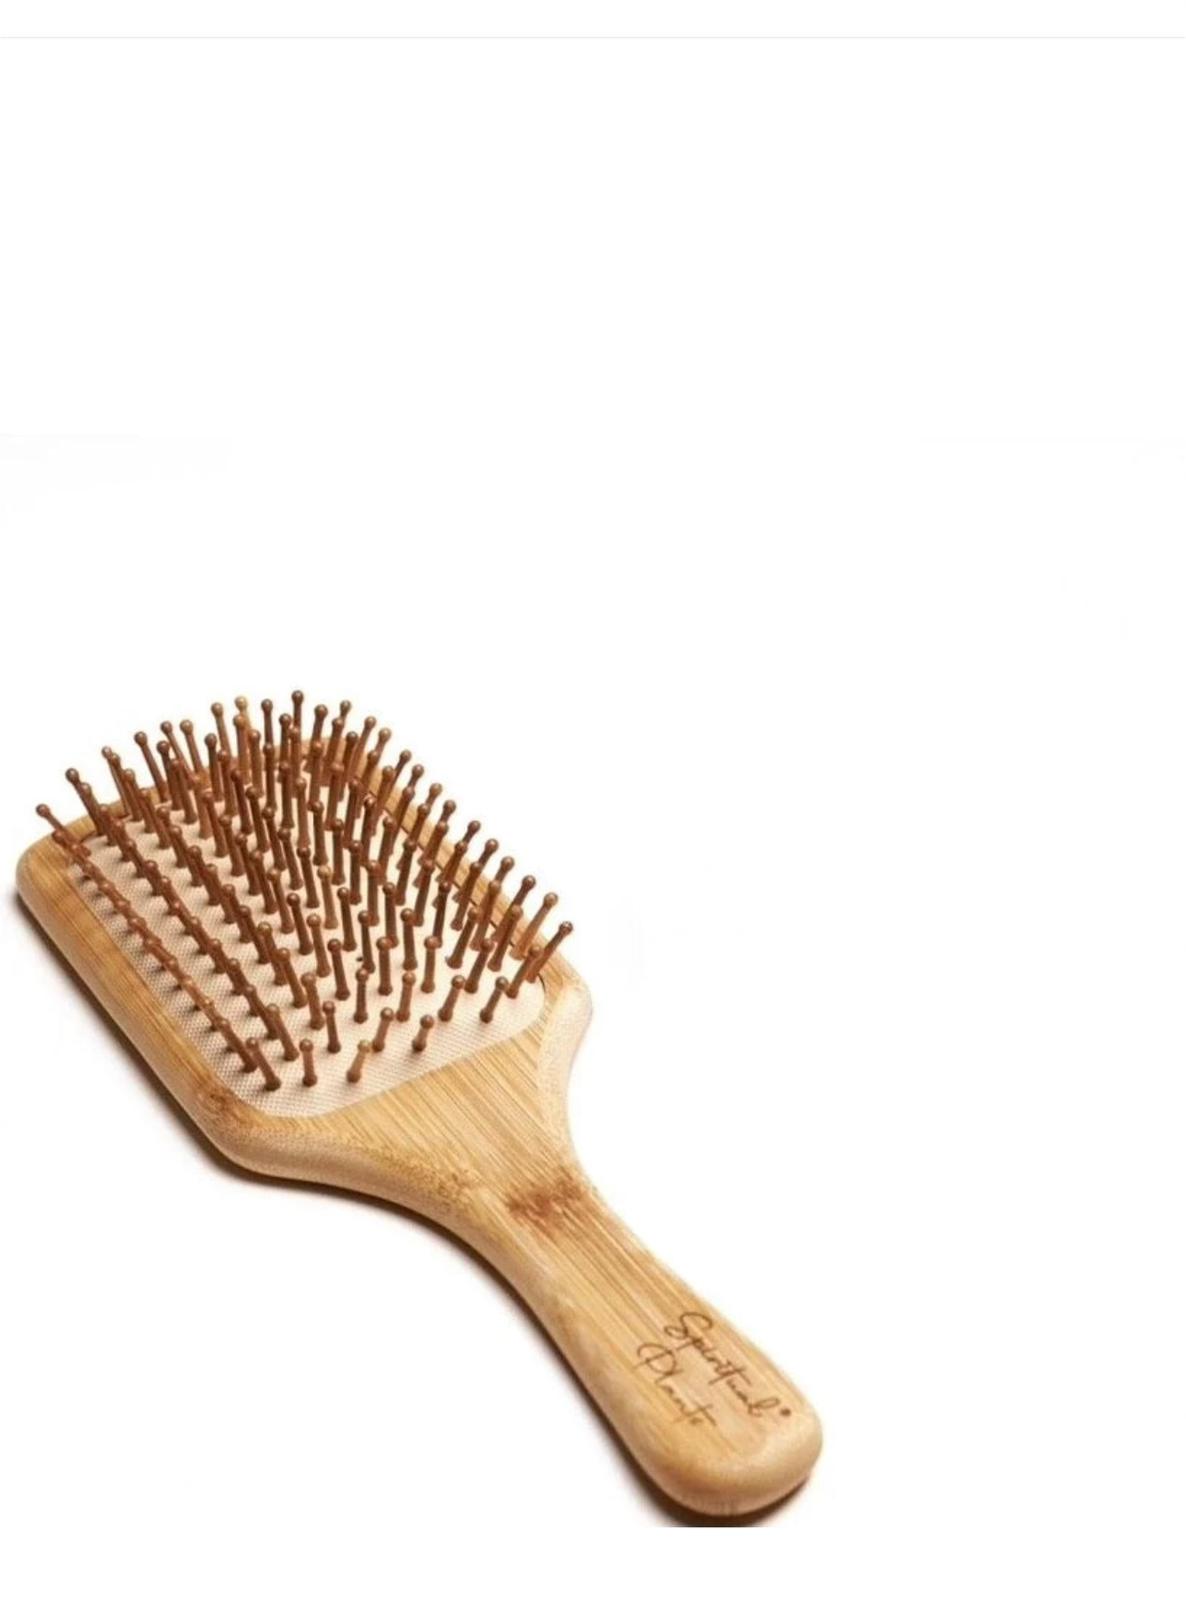 Cepillo Cabello / Hair Brush